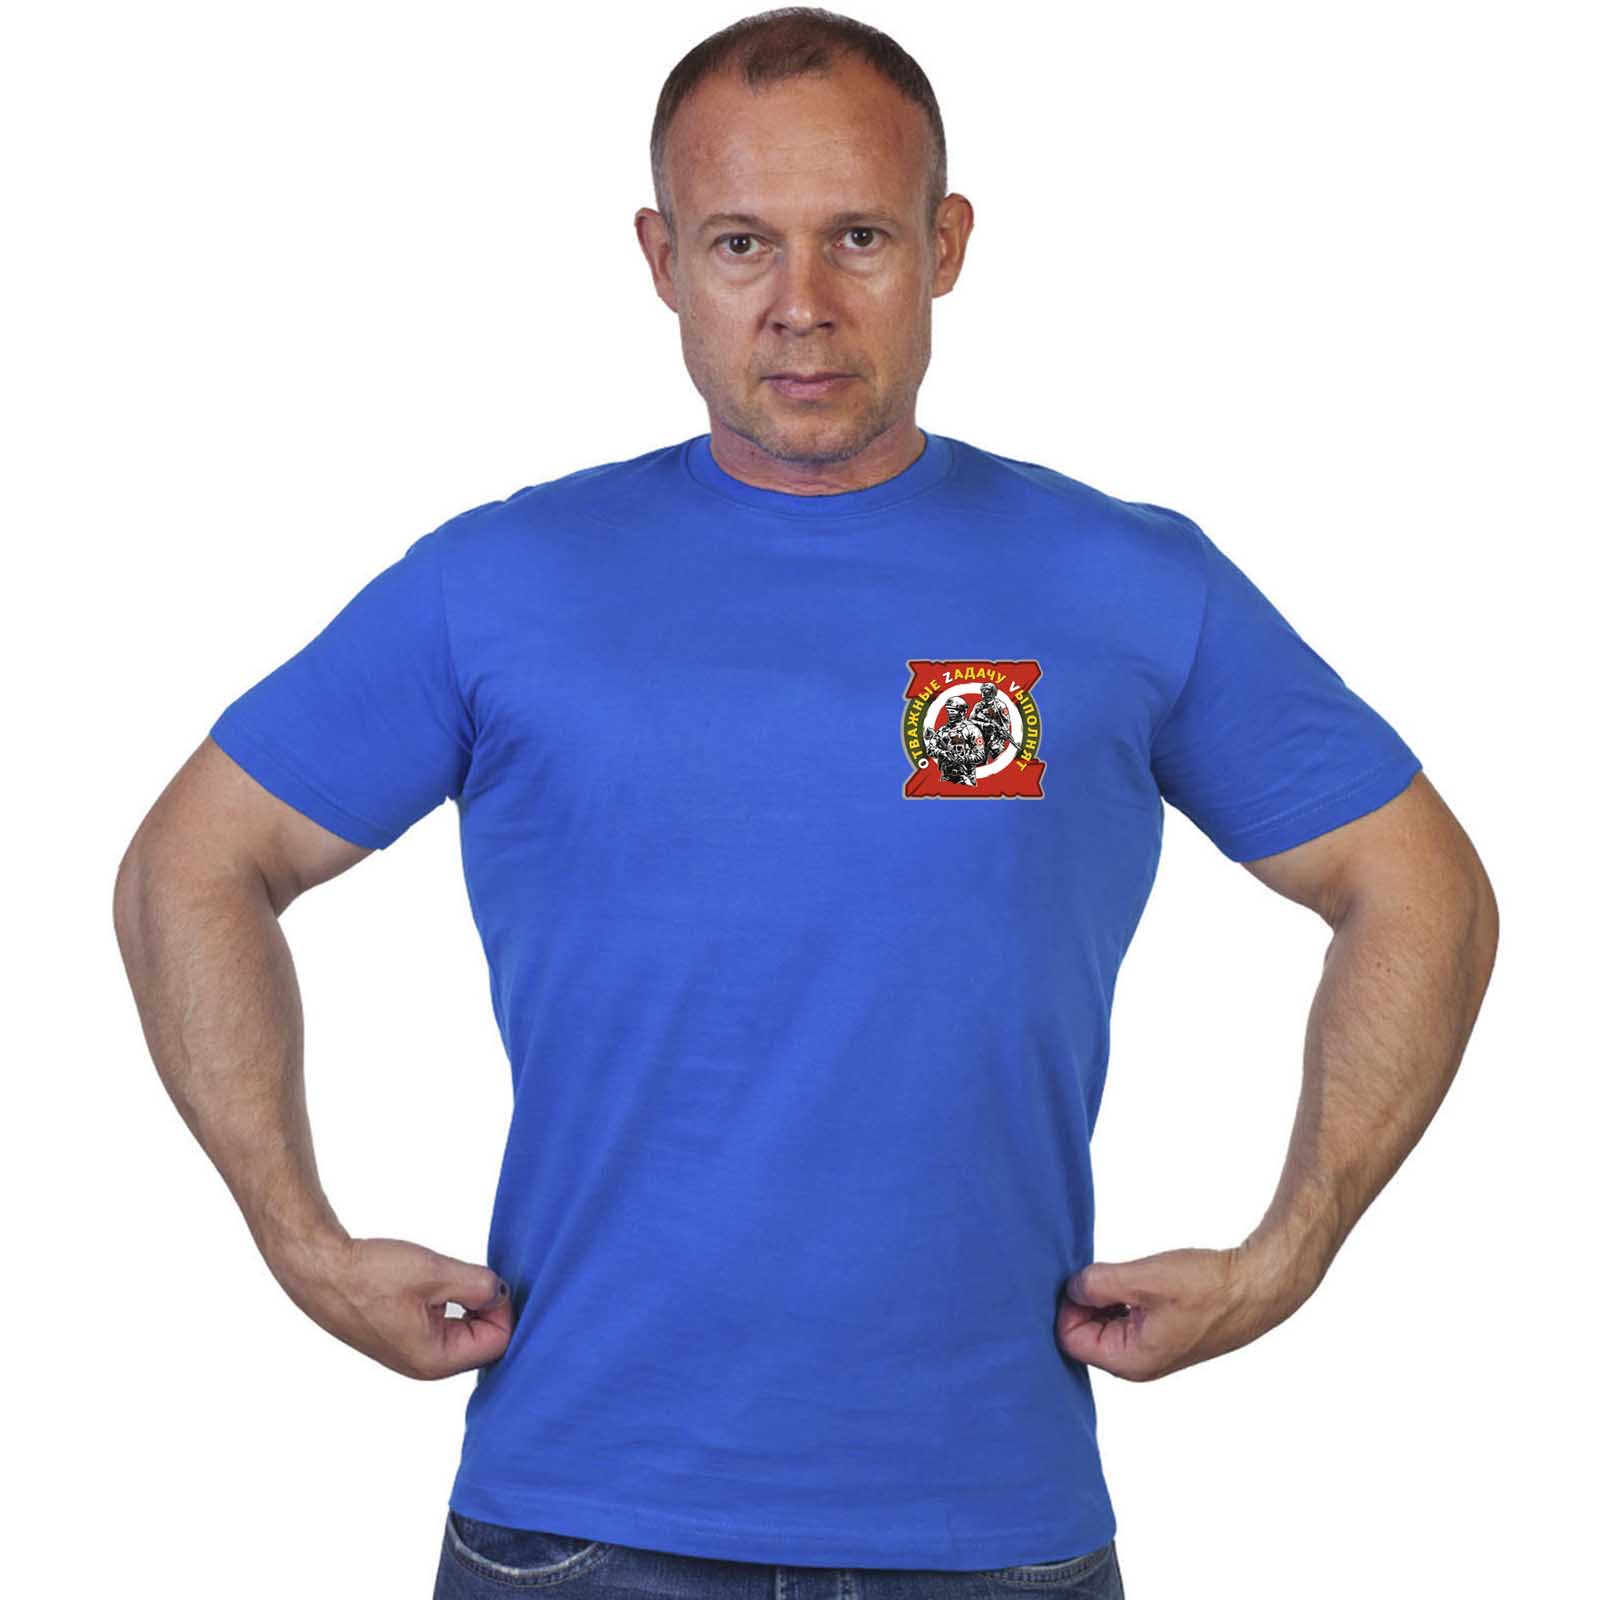 Васильковая футболка с термотрансфером "Отважные Zадачу Vыполнят"